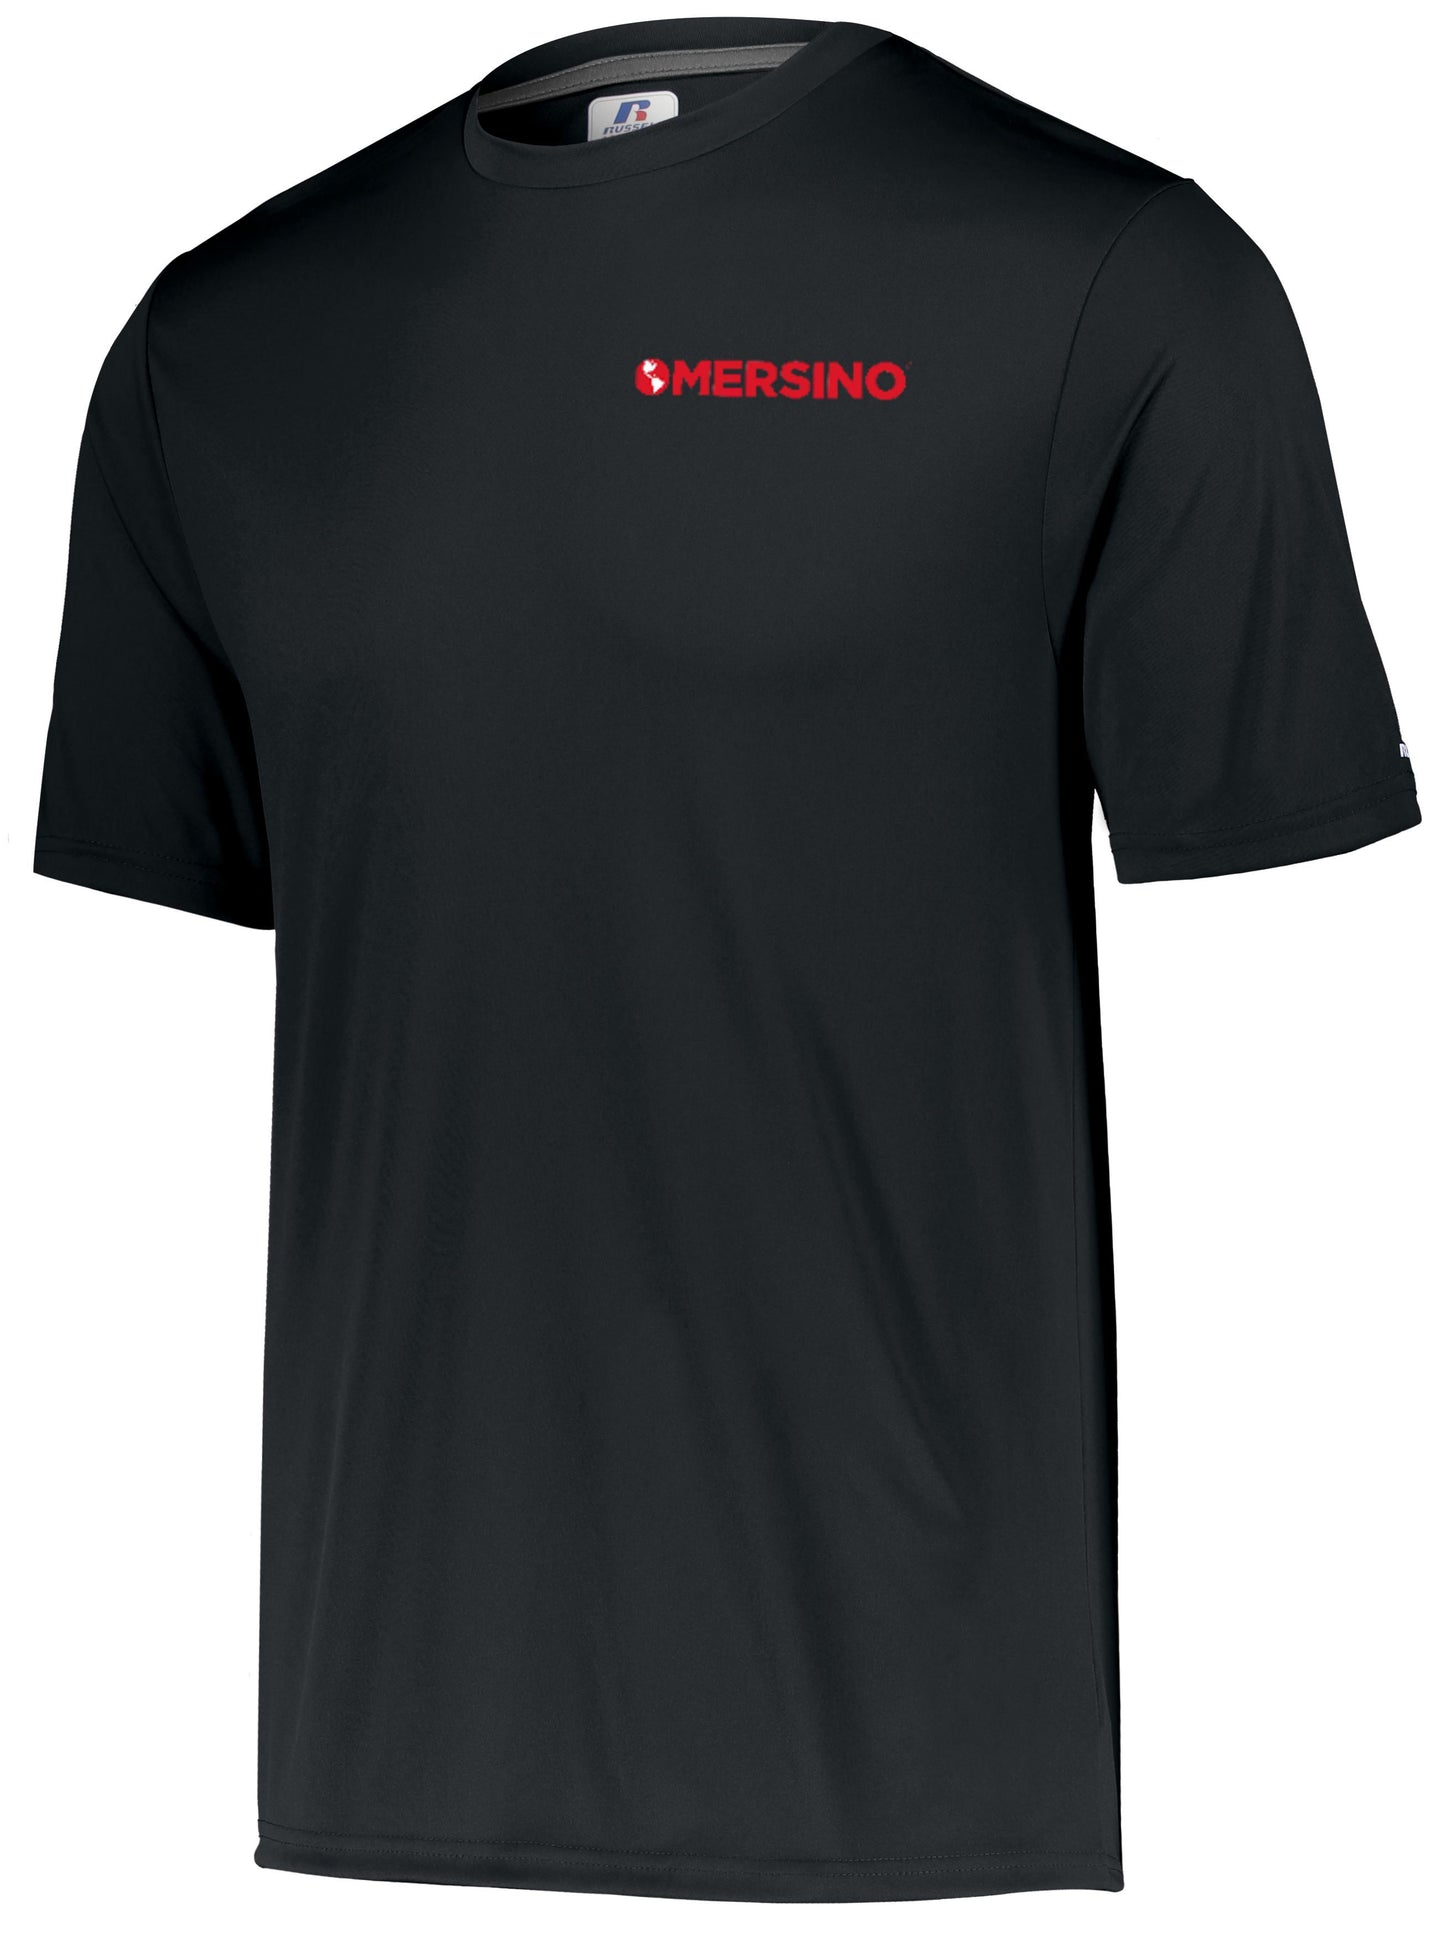 Mersino Russell Performance T-Shirt